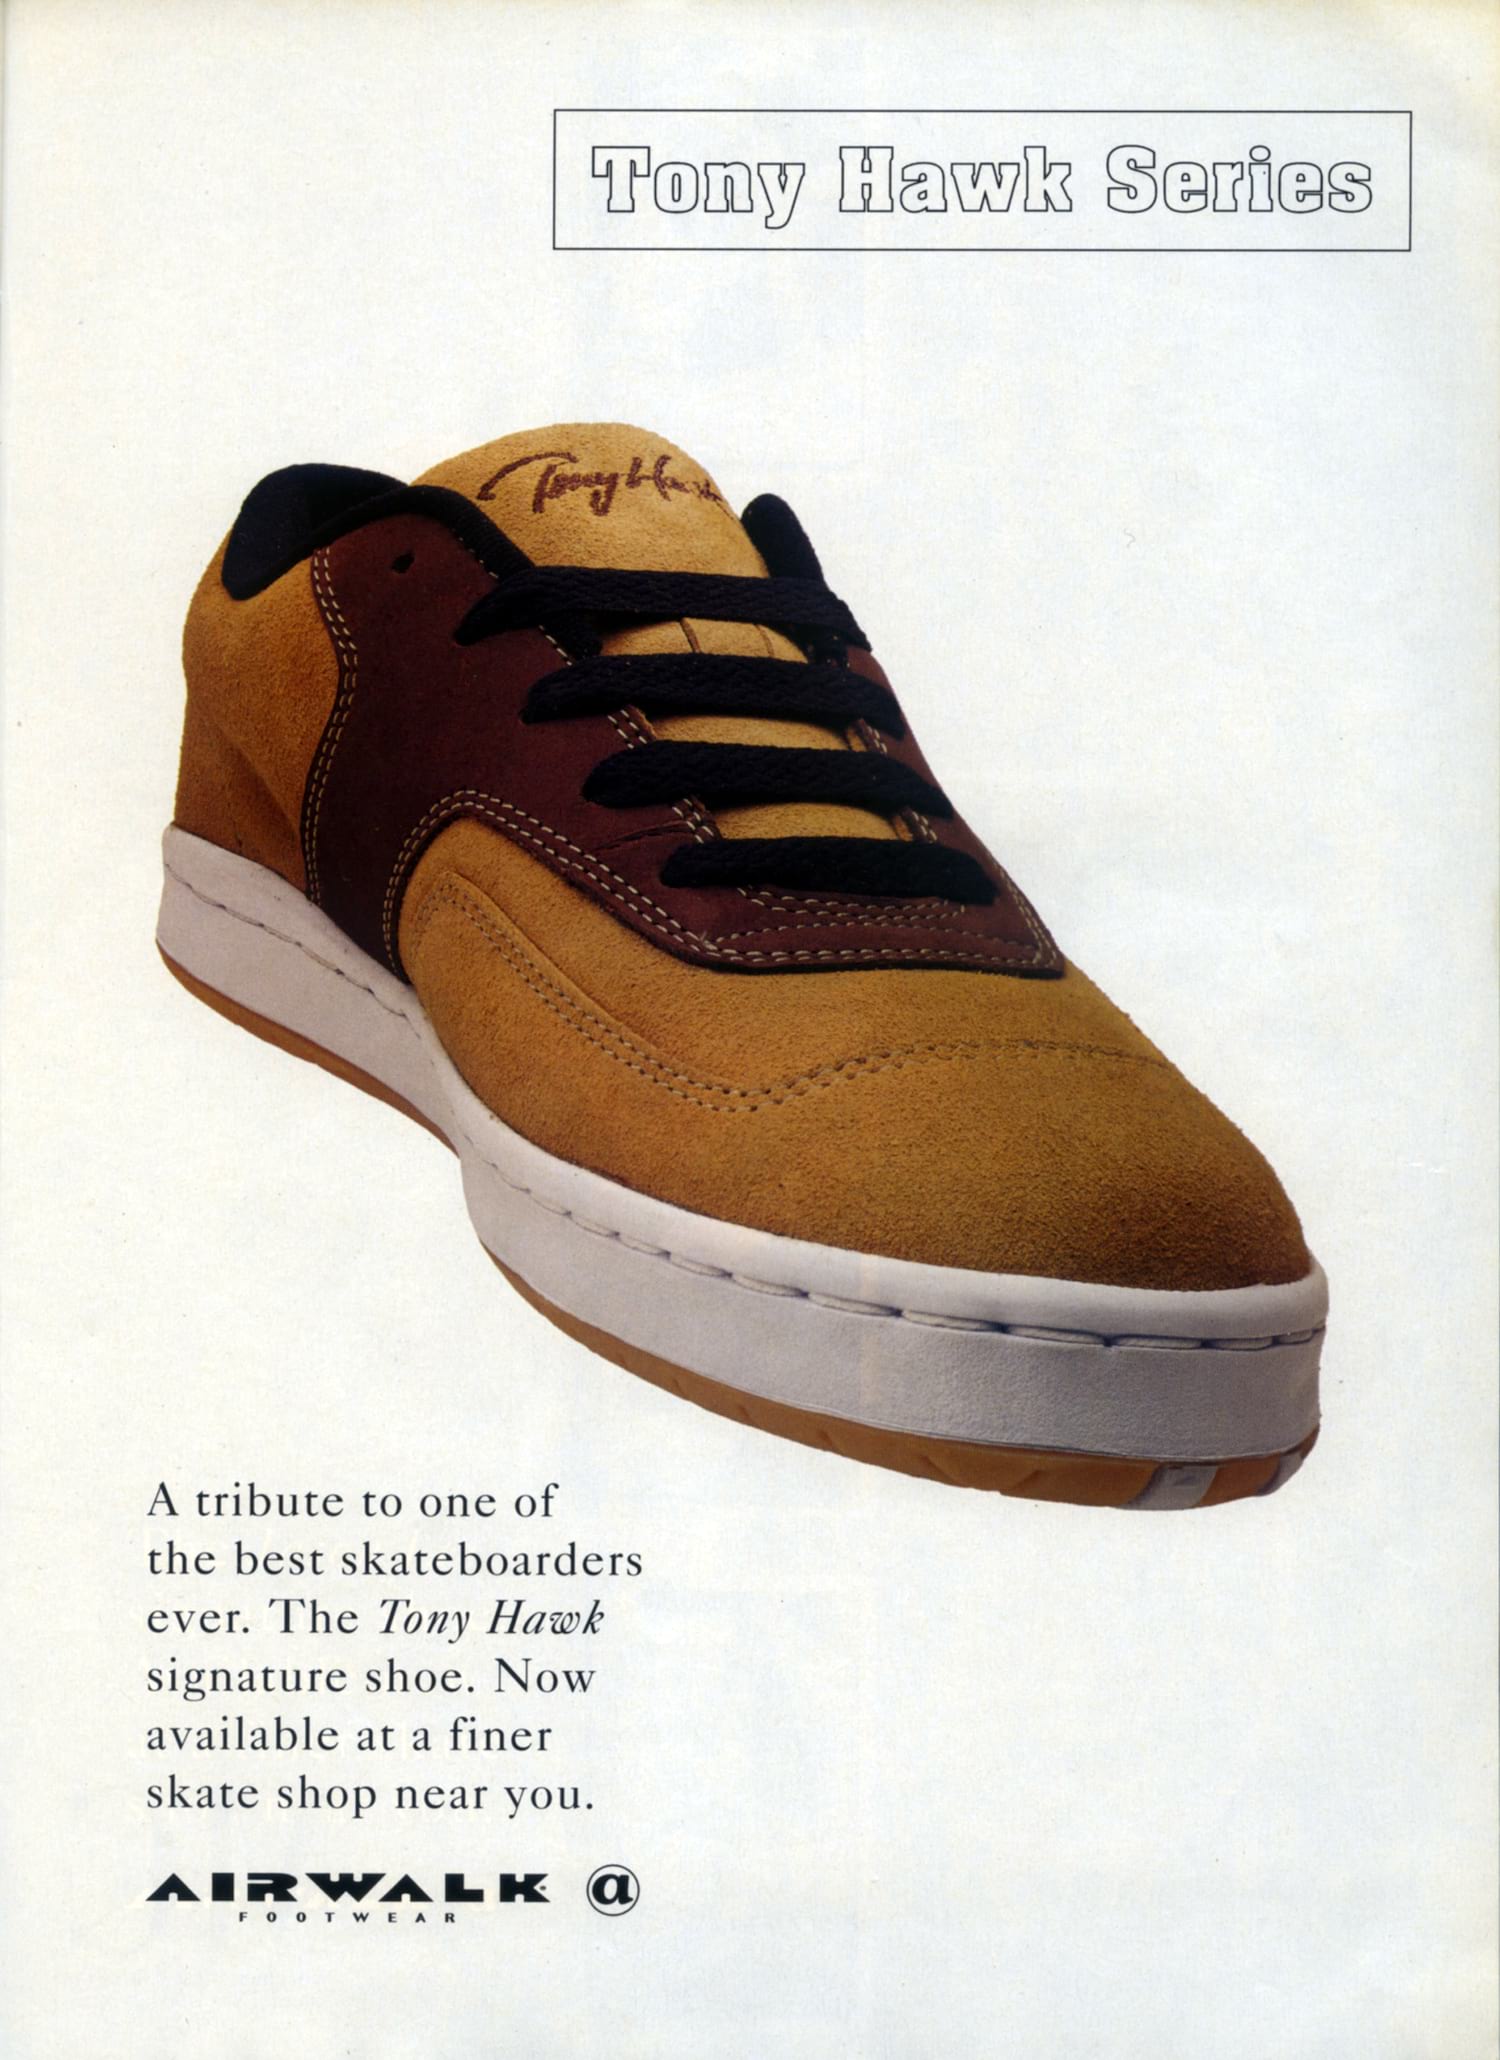 Tony Hawk—My Skate Shoe History